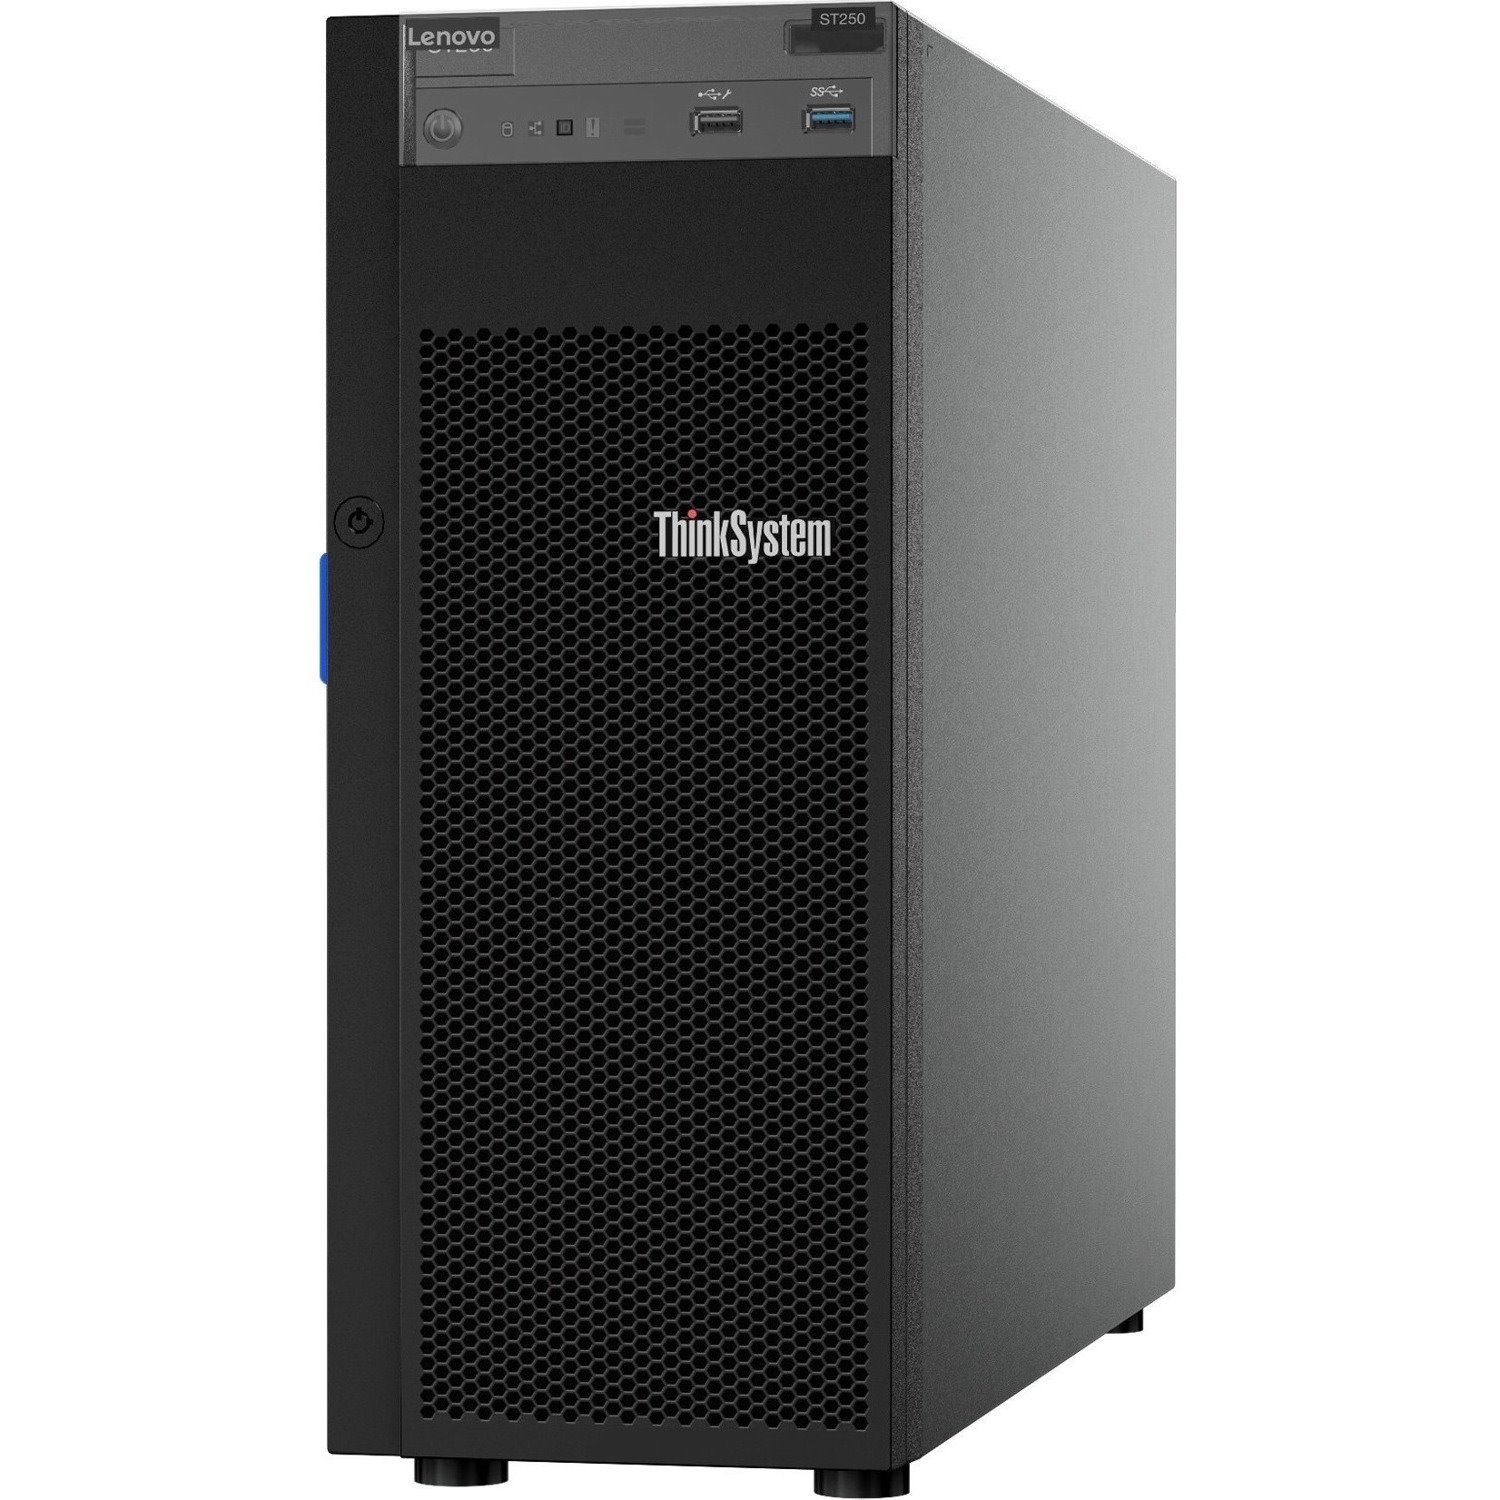 Lenovo ThinkSystem ST250 7Y45A04DAU 4U Tower Server - 1 x Intel Xeon E-2246G 3.60 GHz - 16 GB RAM - Serial ATA/600, 12Gb/s SAS Controller